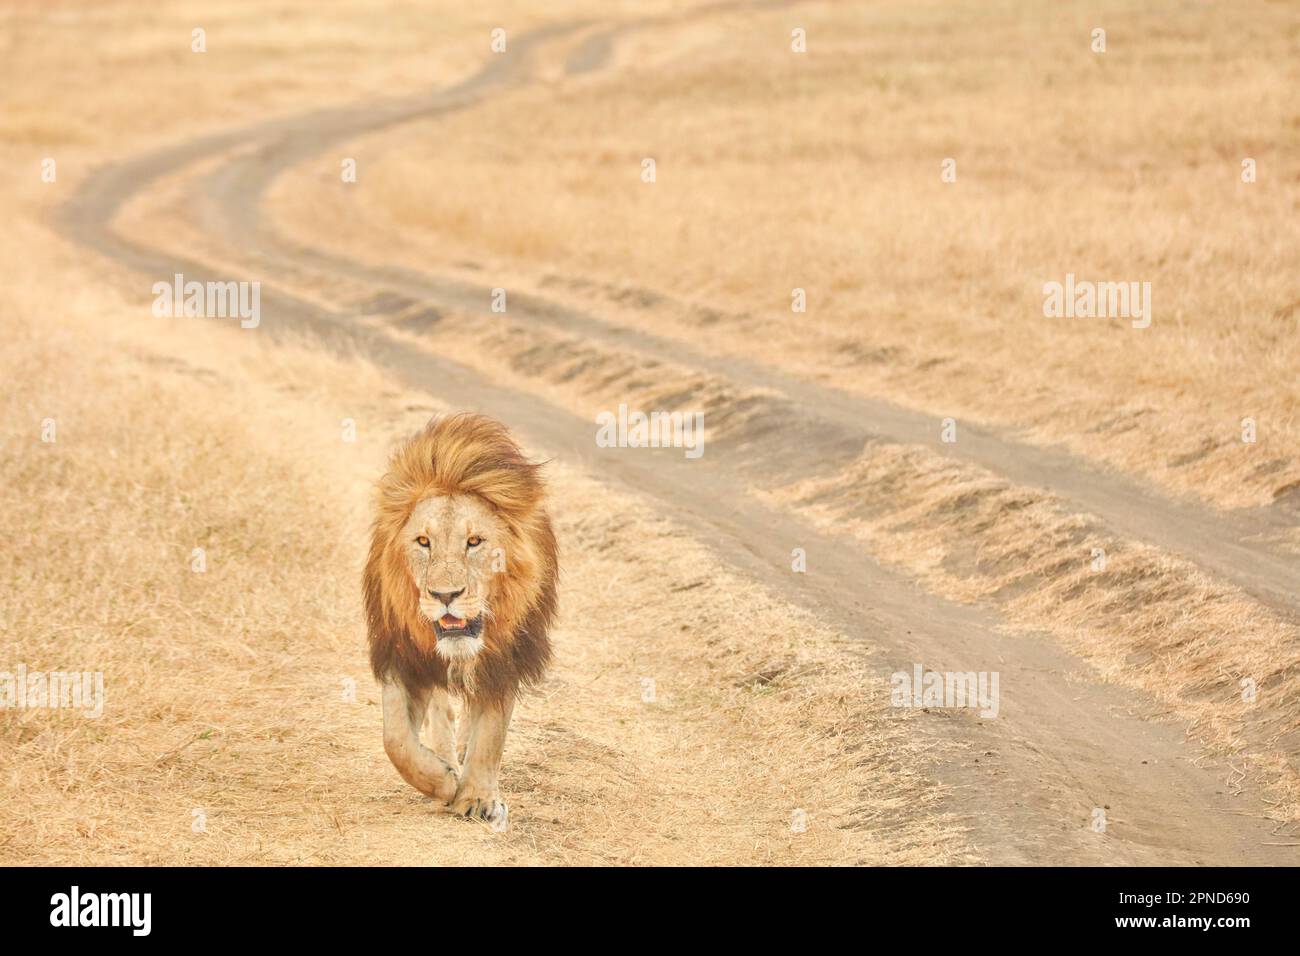 Une promenade de lion mâle adulte à côté d'une route de terre du cratère de Ngorongoro (zone de conservation de Ngorongoro), Tanzanie, Afrique. Banque D'Images